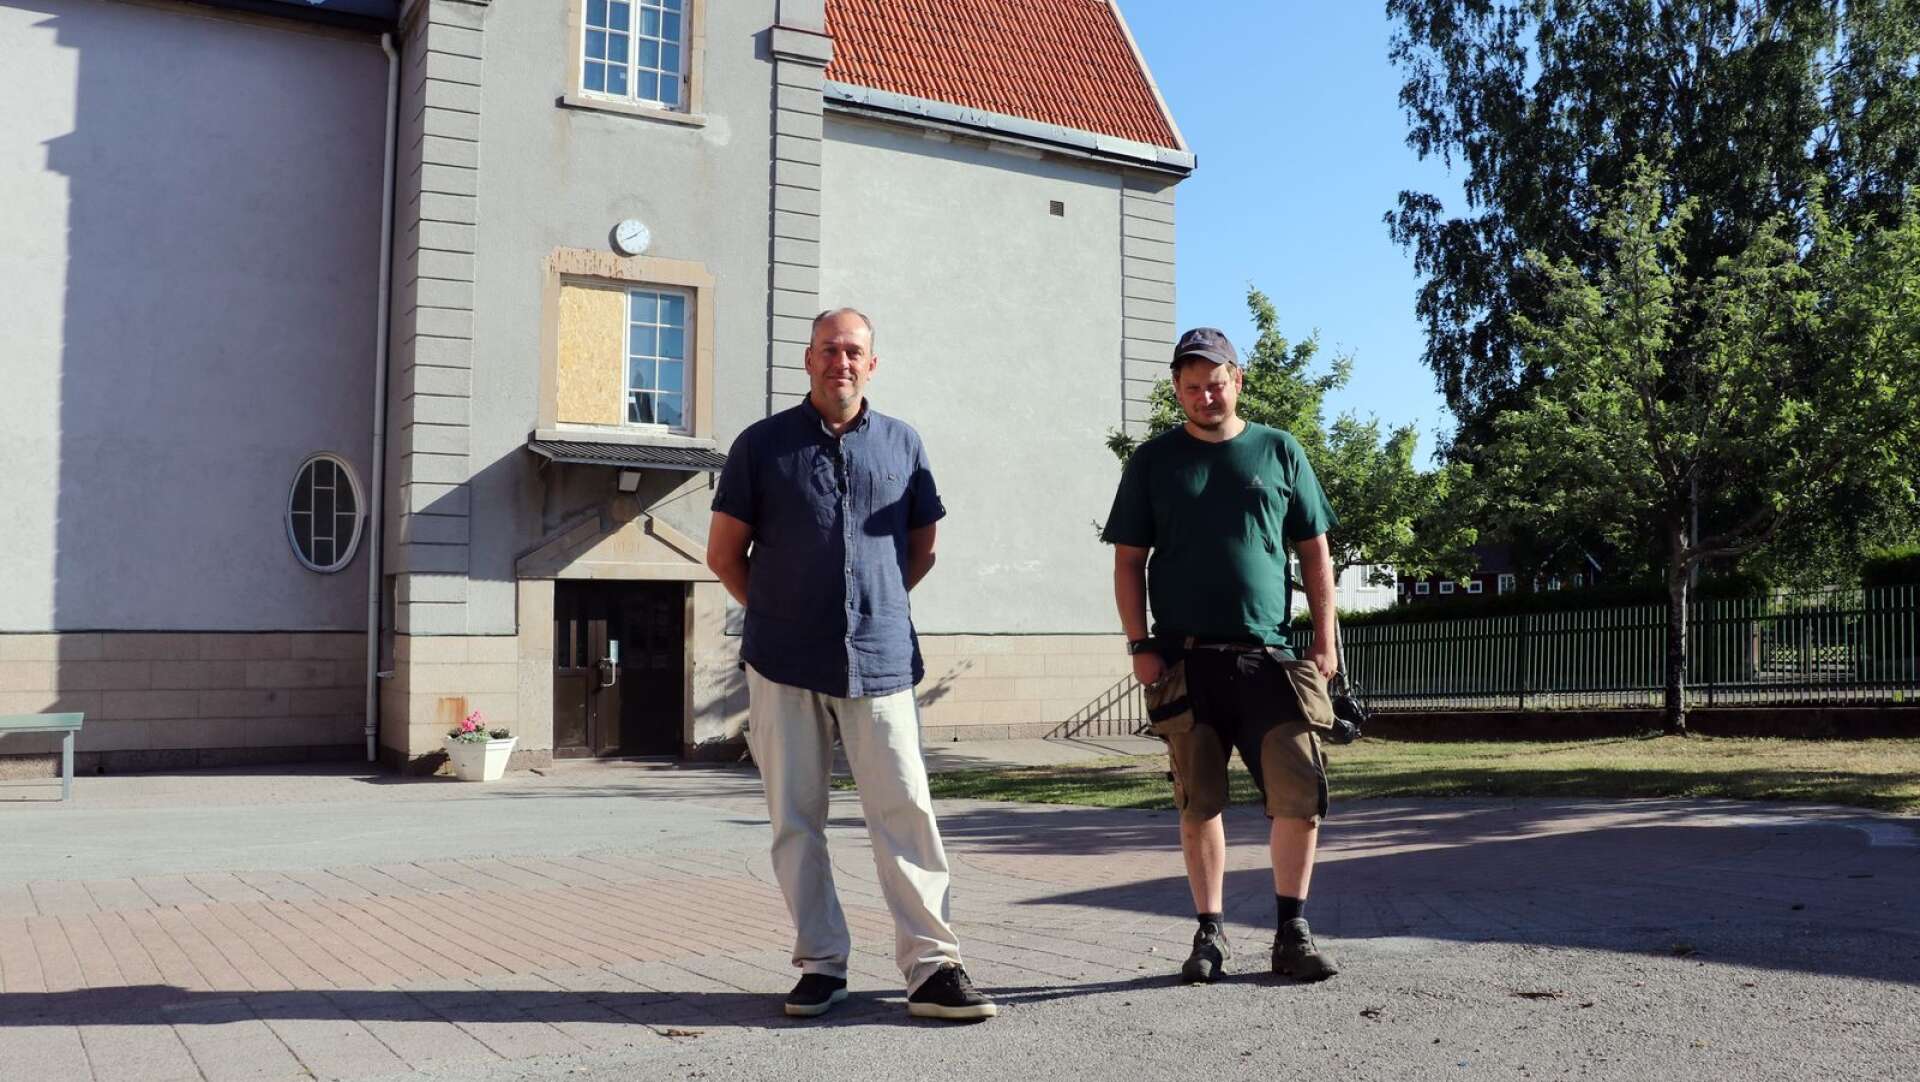 Åmåls Kommunfastigheters vd Magnus Dalsbo och fastighetsskötaren Andreas Dahlgren visar runt på Södra skolans skolgård. Över ena ingången till den grå byggnaden har ett helt fönster krossats.